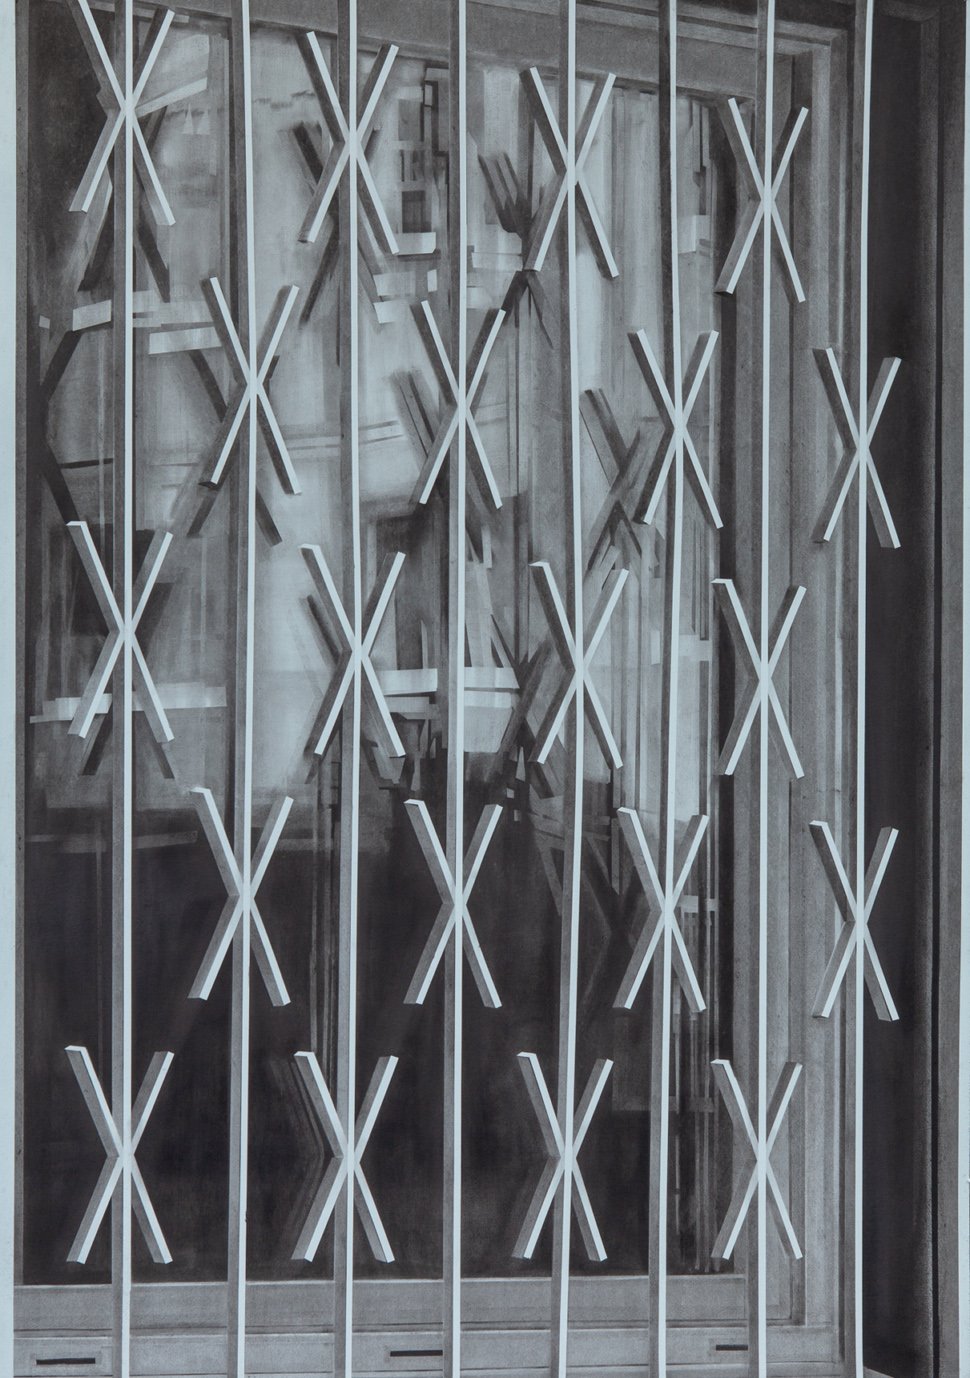  Grid Crossfence, 2019, Kohle auf Papier, 100 x 70 cm 